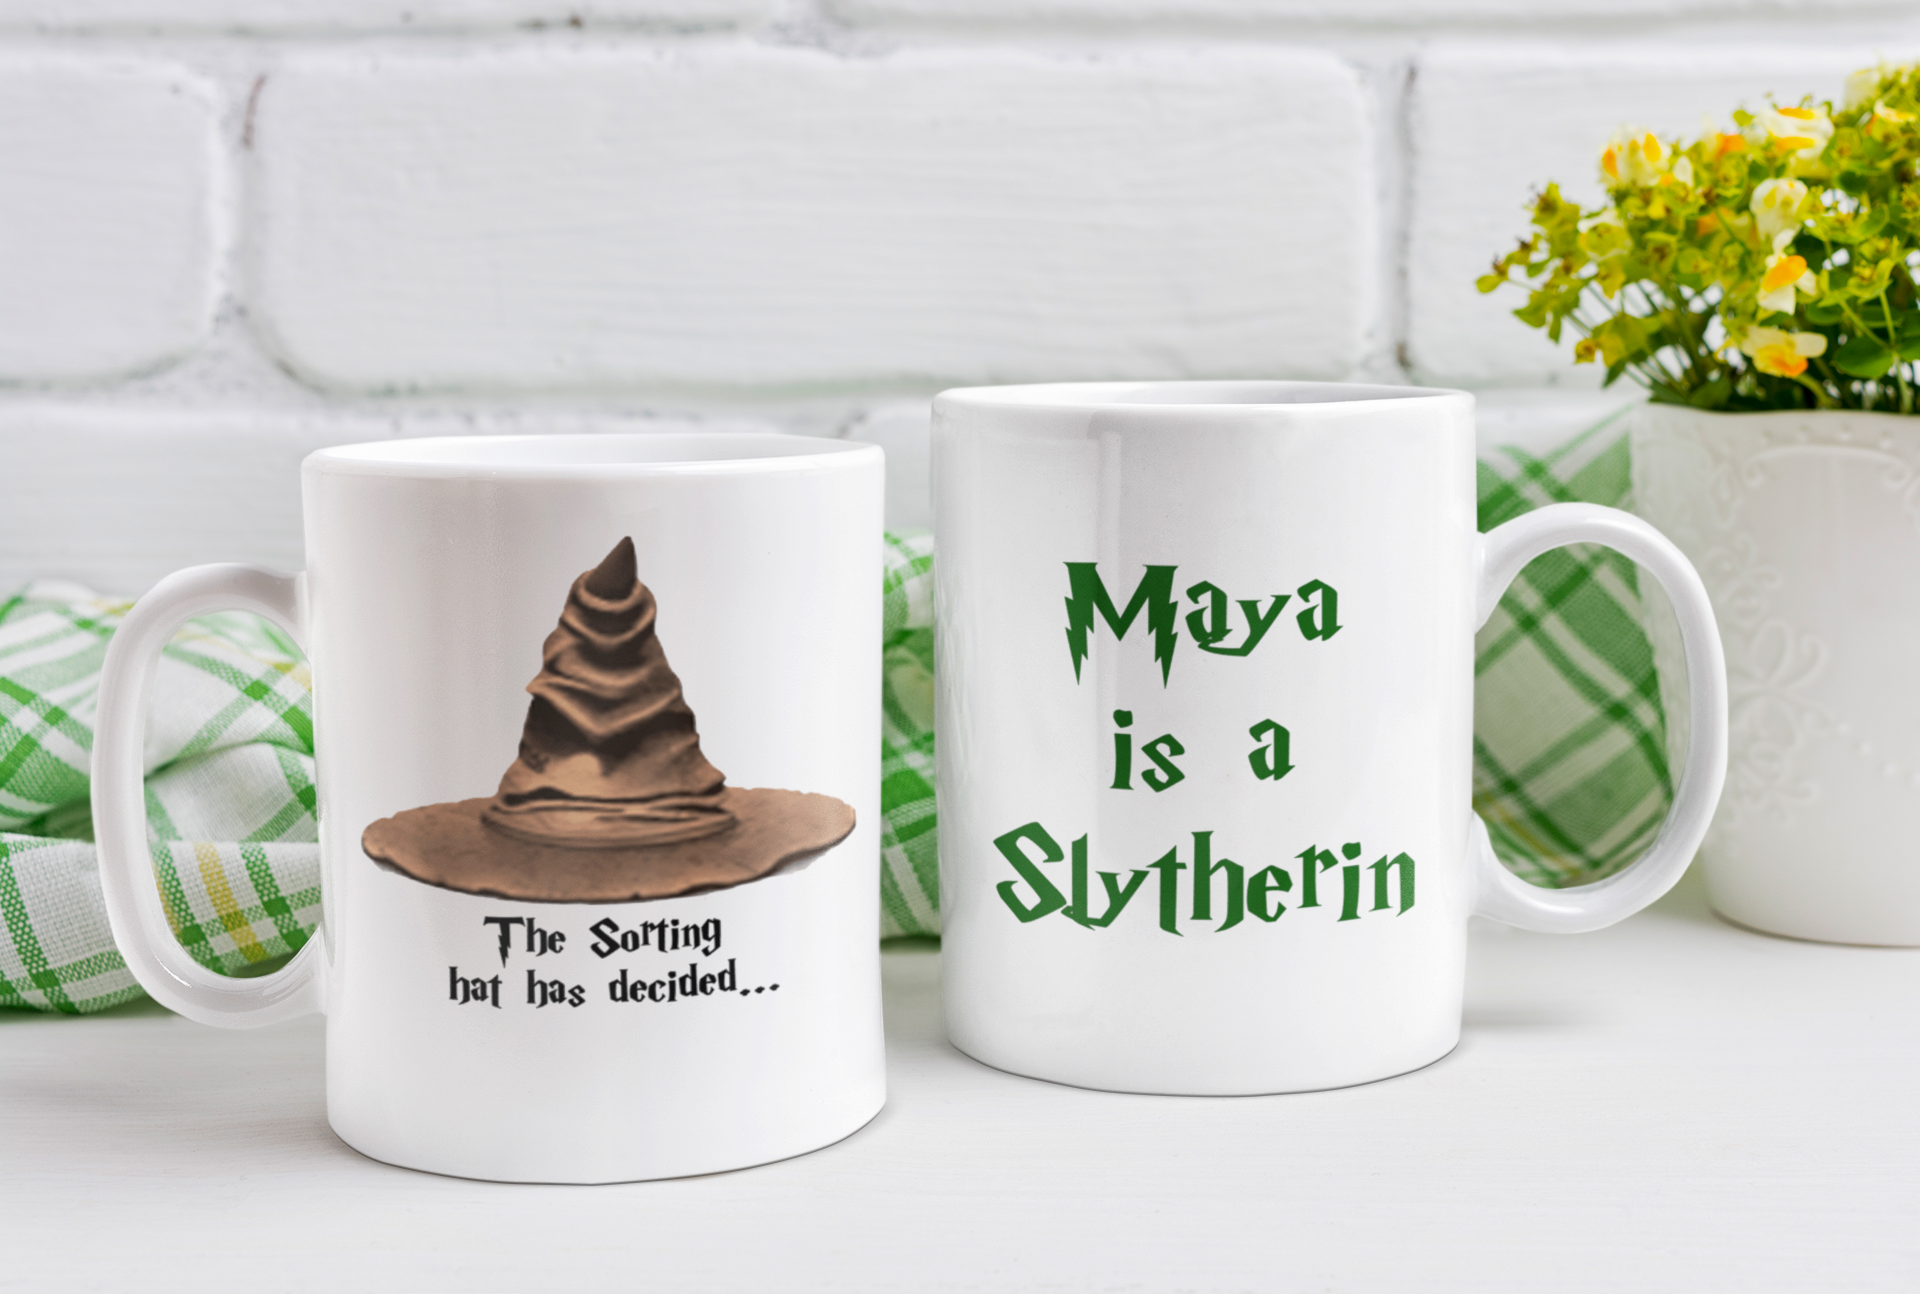 Harry Potter, Harry Potter Official Mug